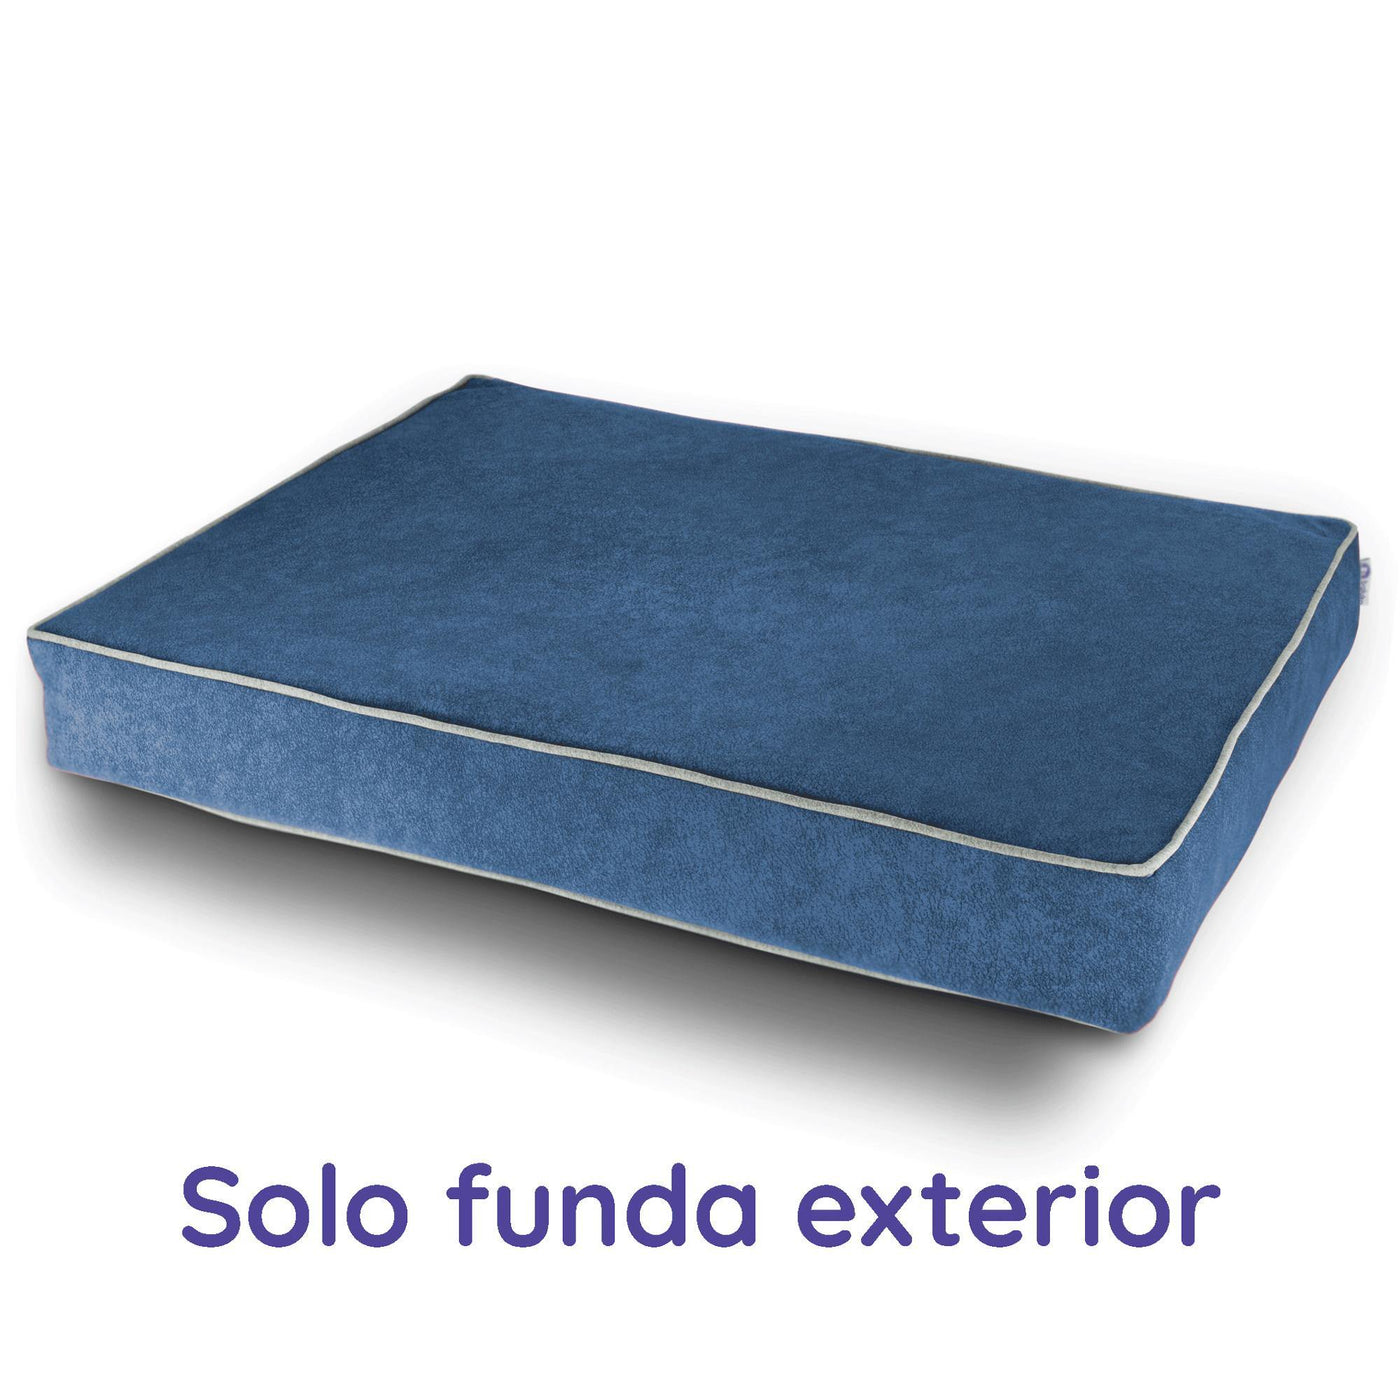 Funda Exterior EXTRA (SOLO FUNDA) y para gatos ortopédico terapéutico antipelo Descanso vendor-unknown L (100 x 70 cm) Azul Océano 